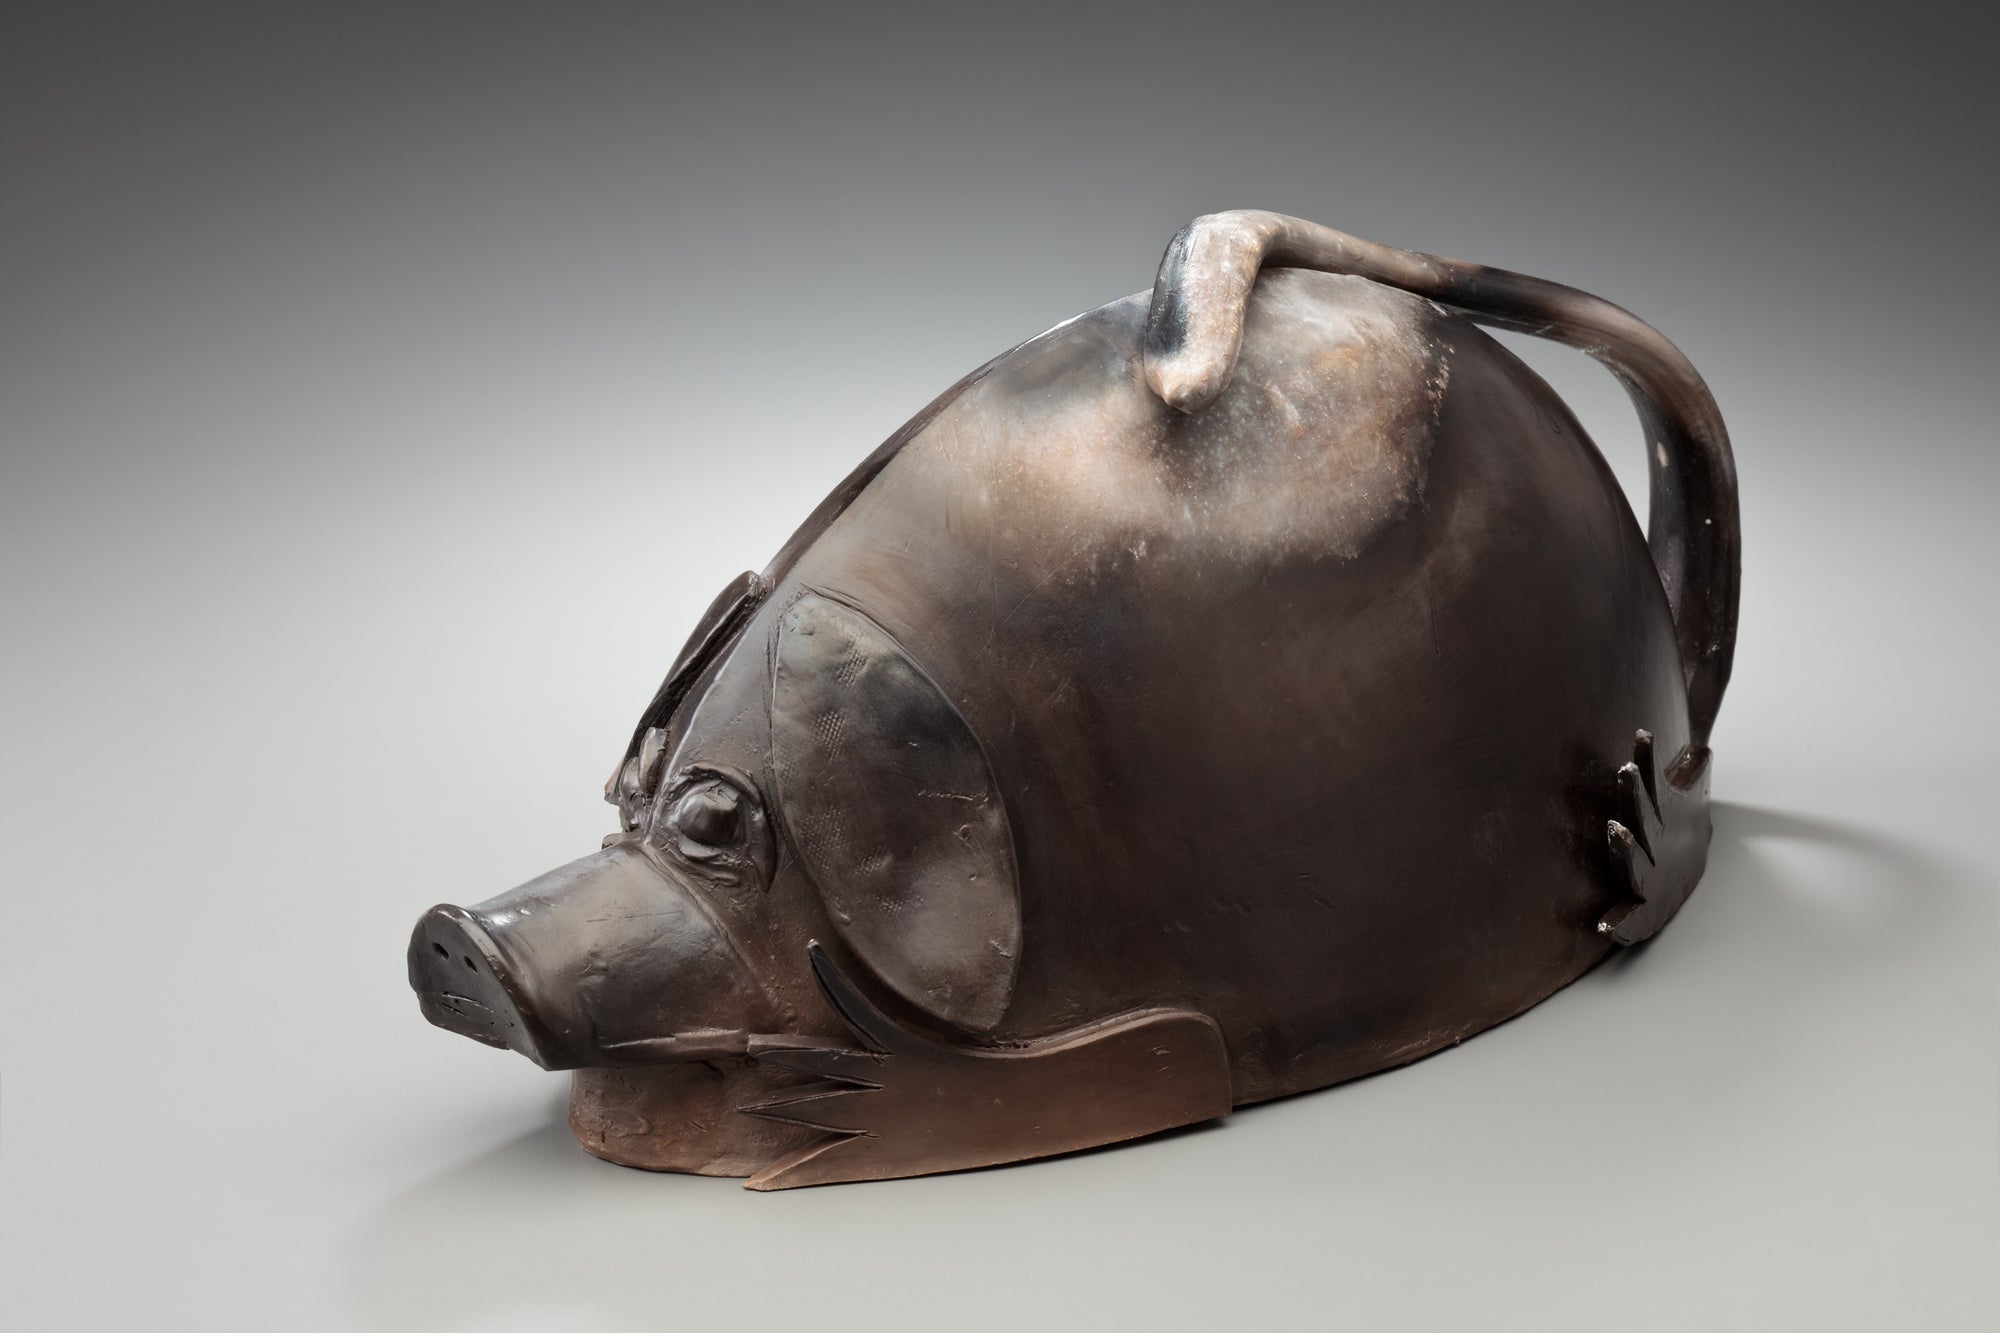 Piggydork by Judy Weeden